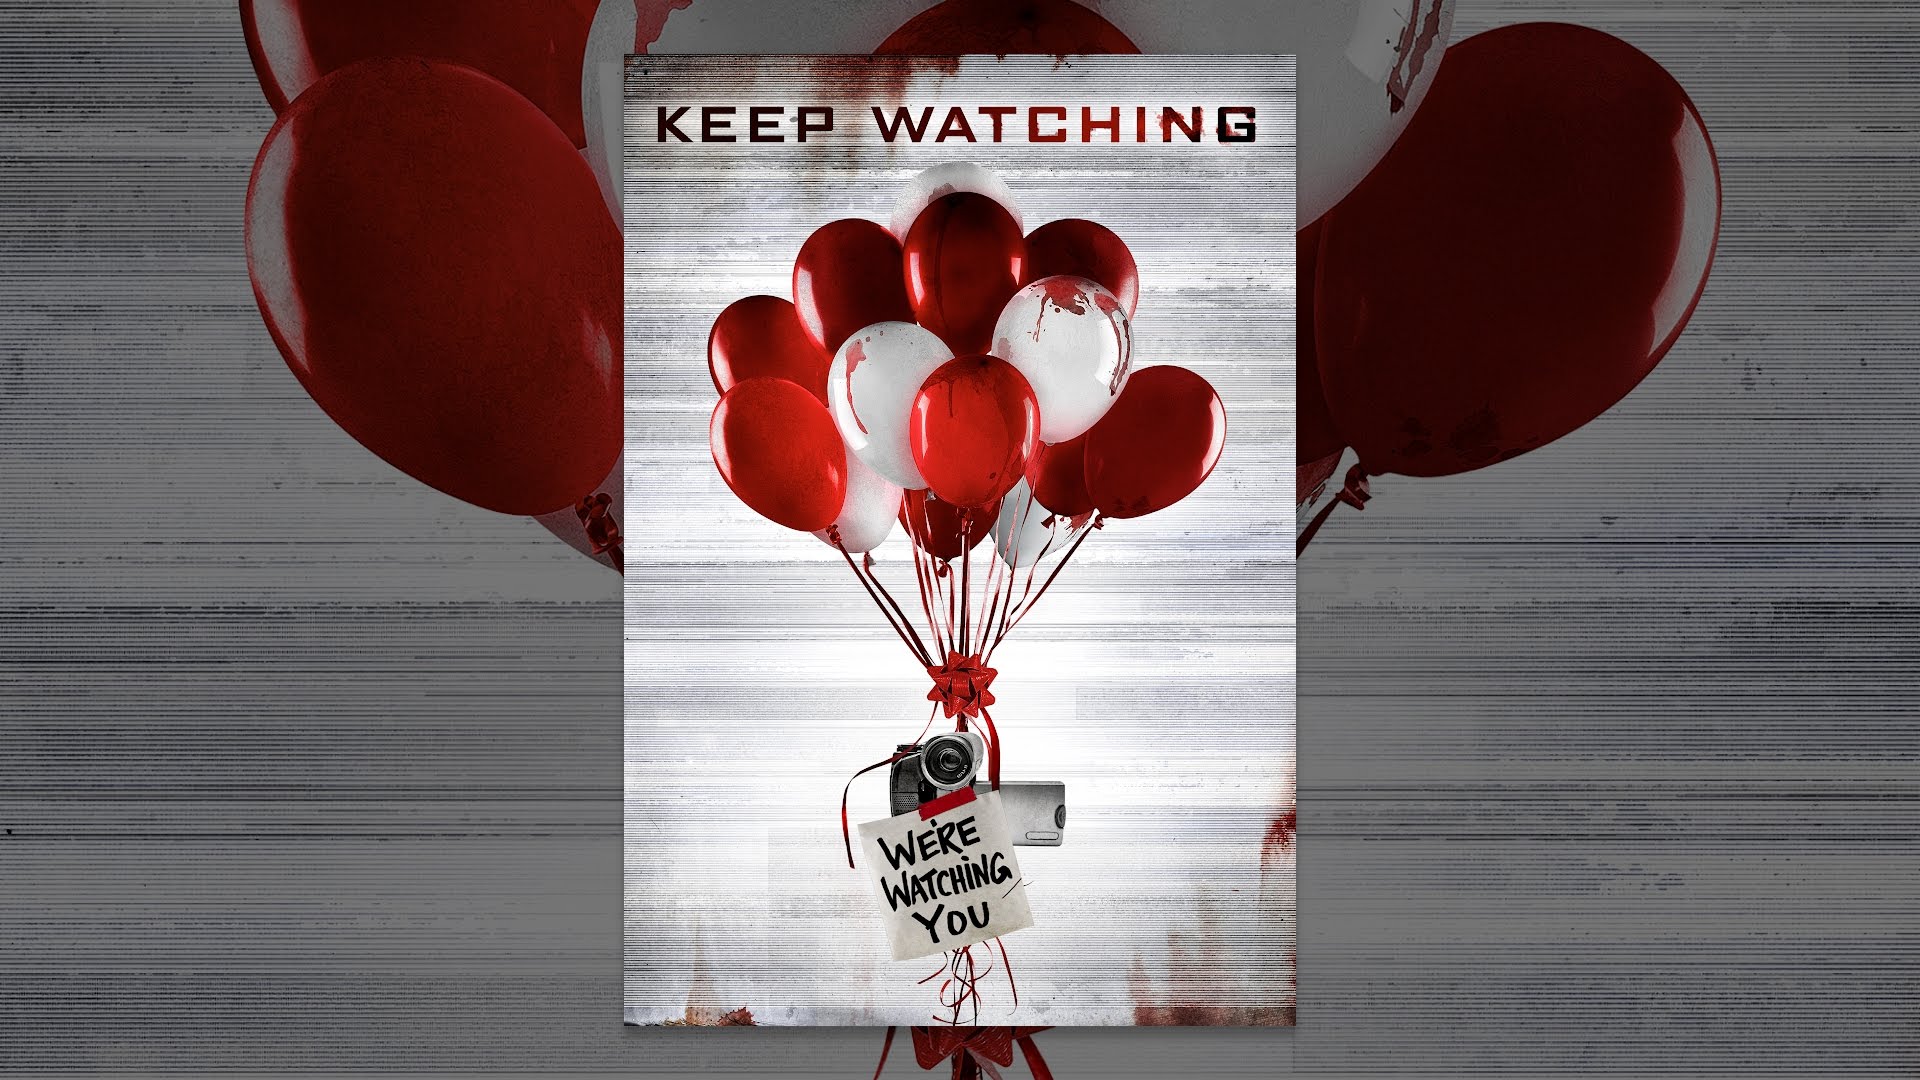 Keep watch me. Keep watching. Keep watching you.